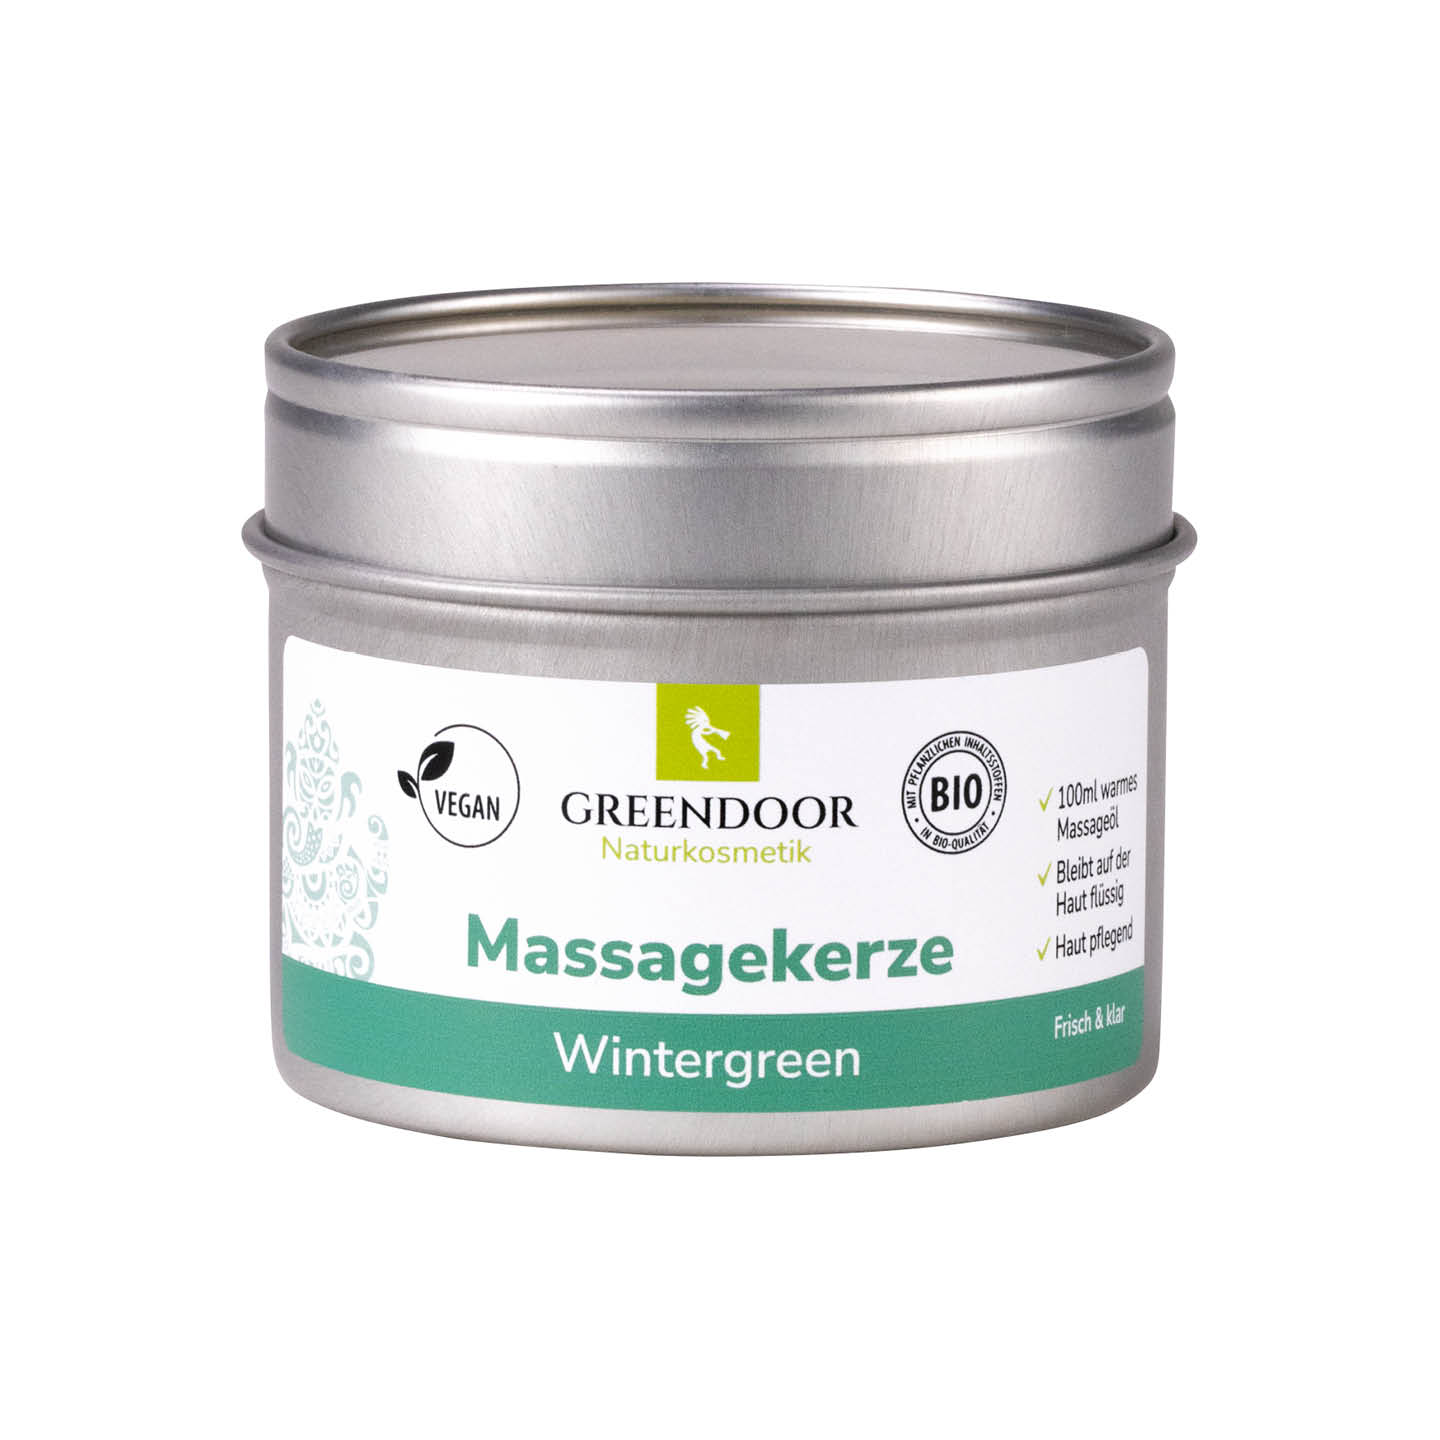 Massagekerze Wintergreen 100ml, vegan, vitalisierend, medizinische Massagen